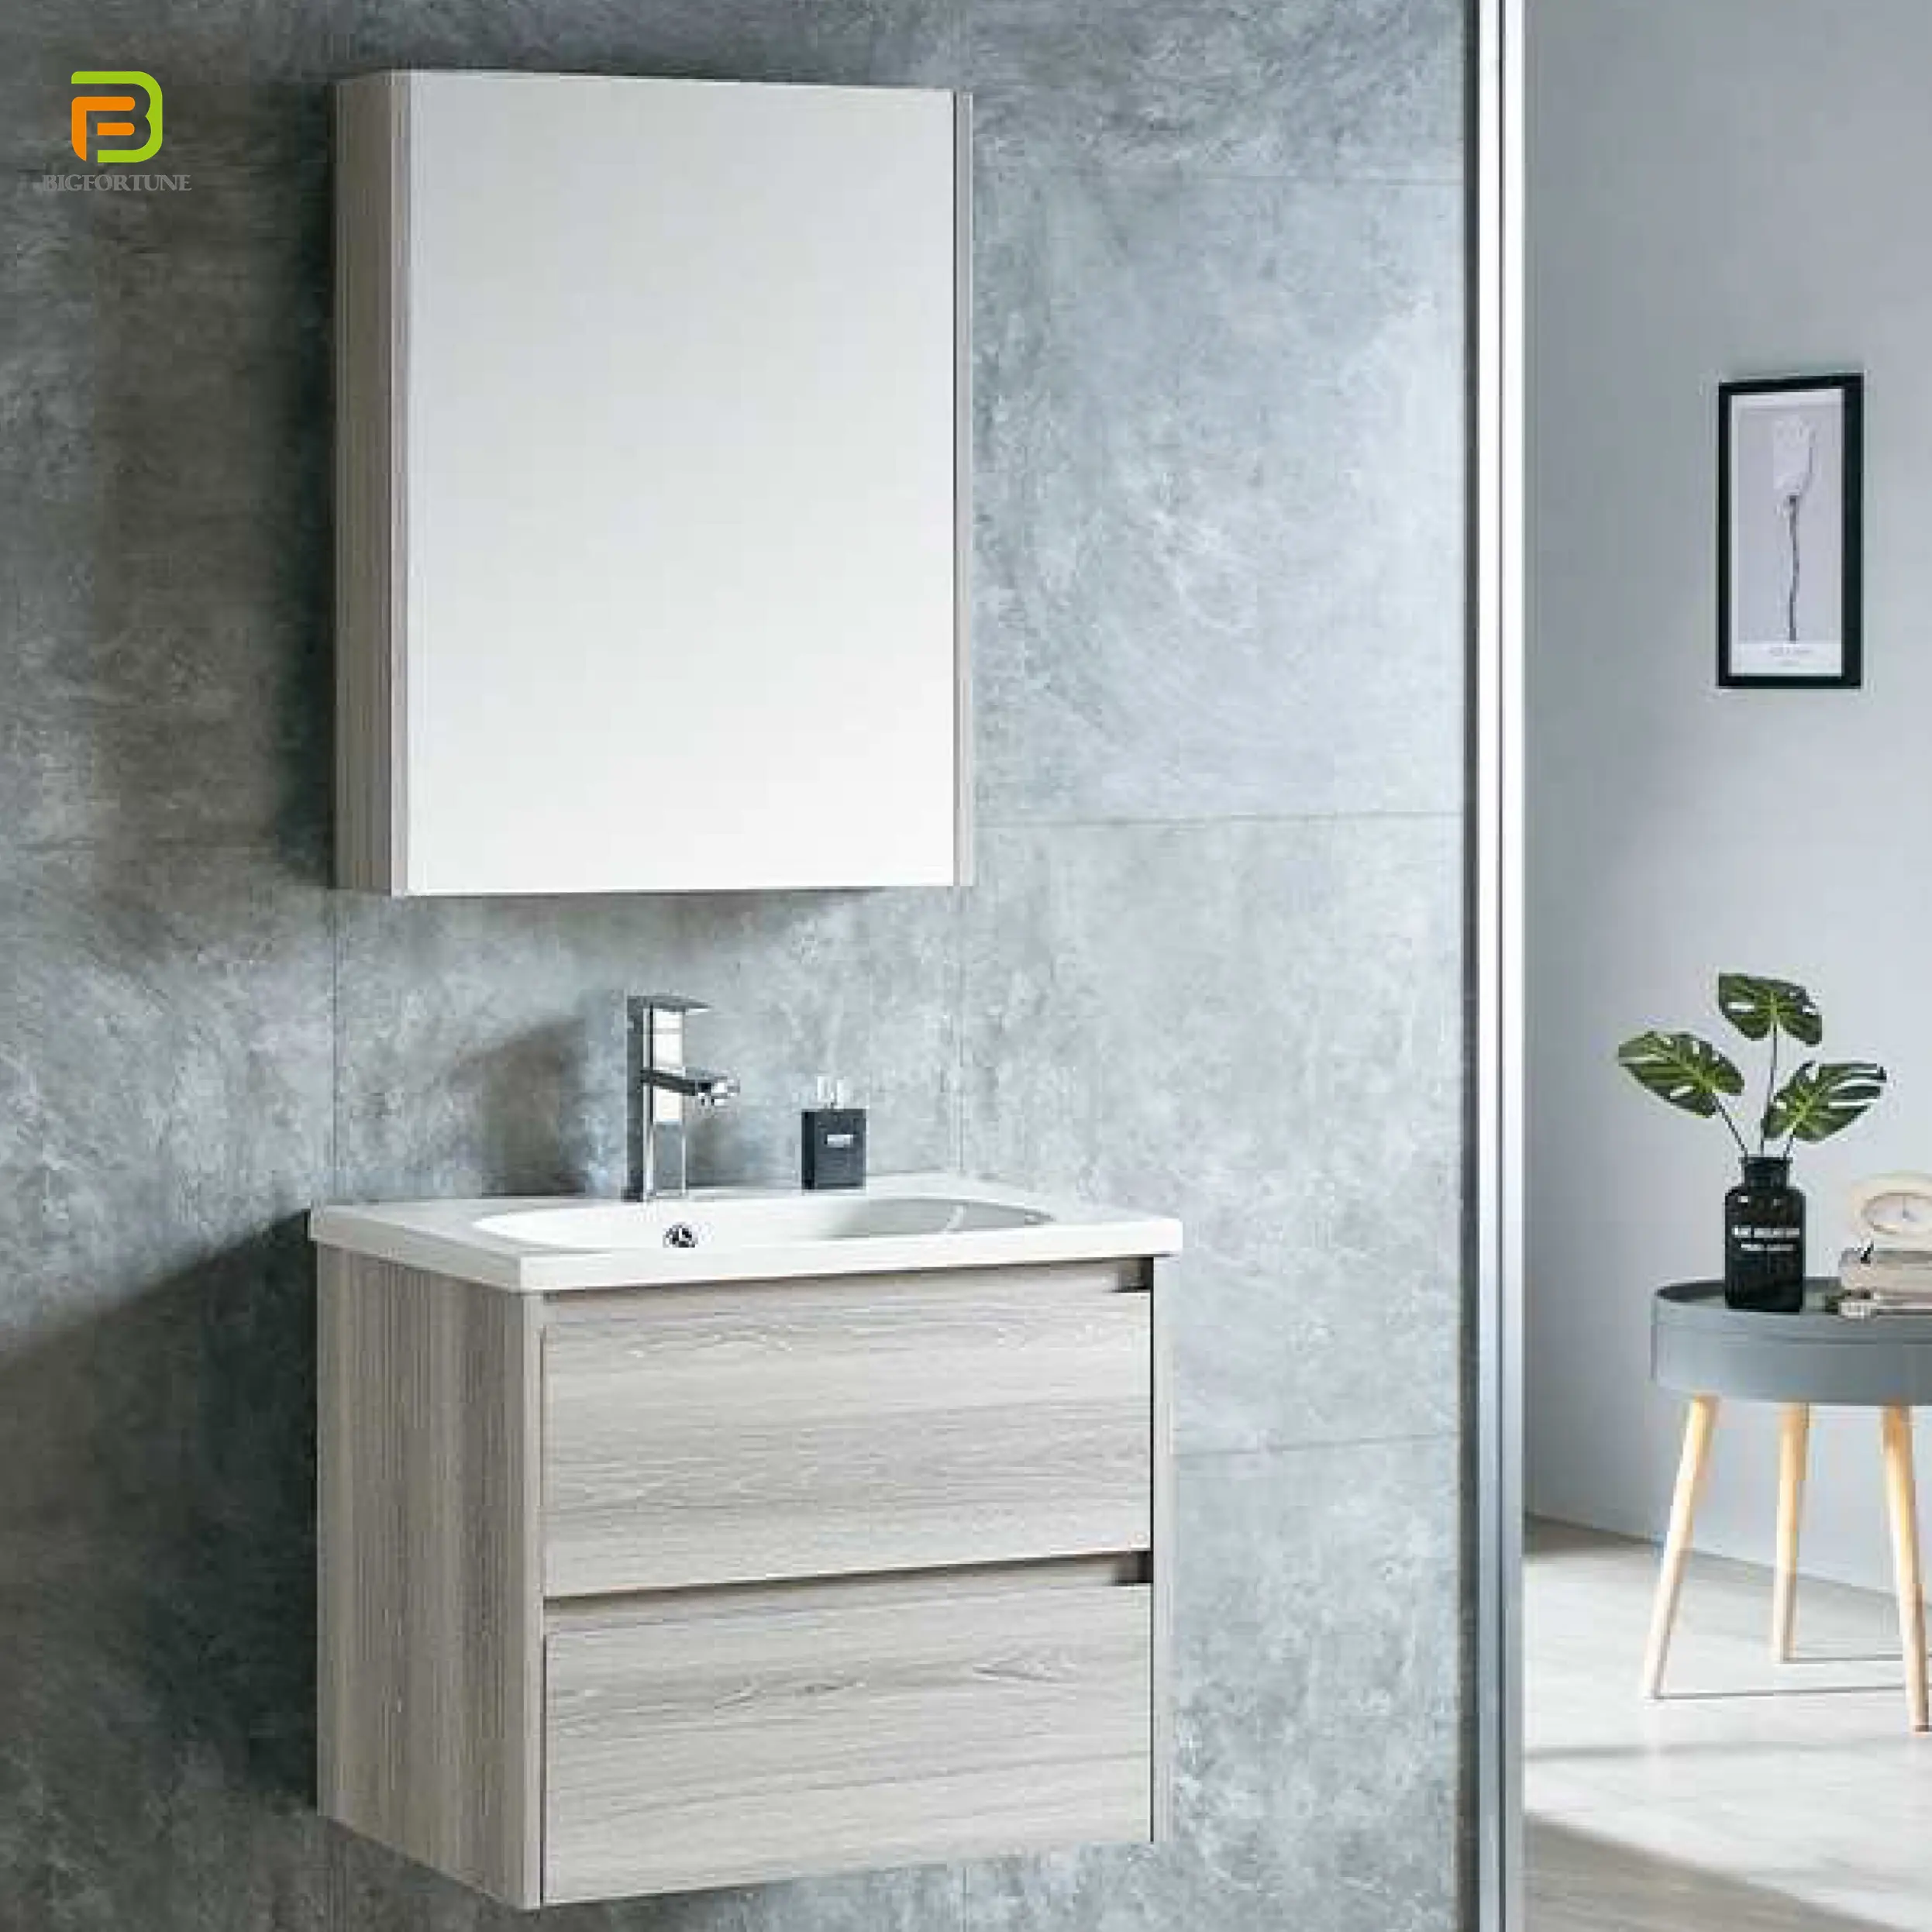 새로운 디자인 PVC 목욕탕 세면기 내각 벽은 PVC 거울 내각 허영 잘 고정된 현대 유리 20-35days 큰 운을 걸었습니다